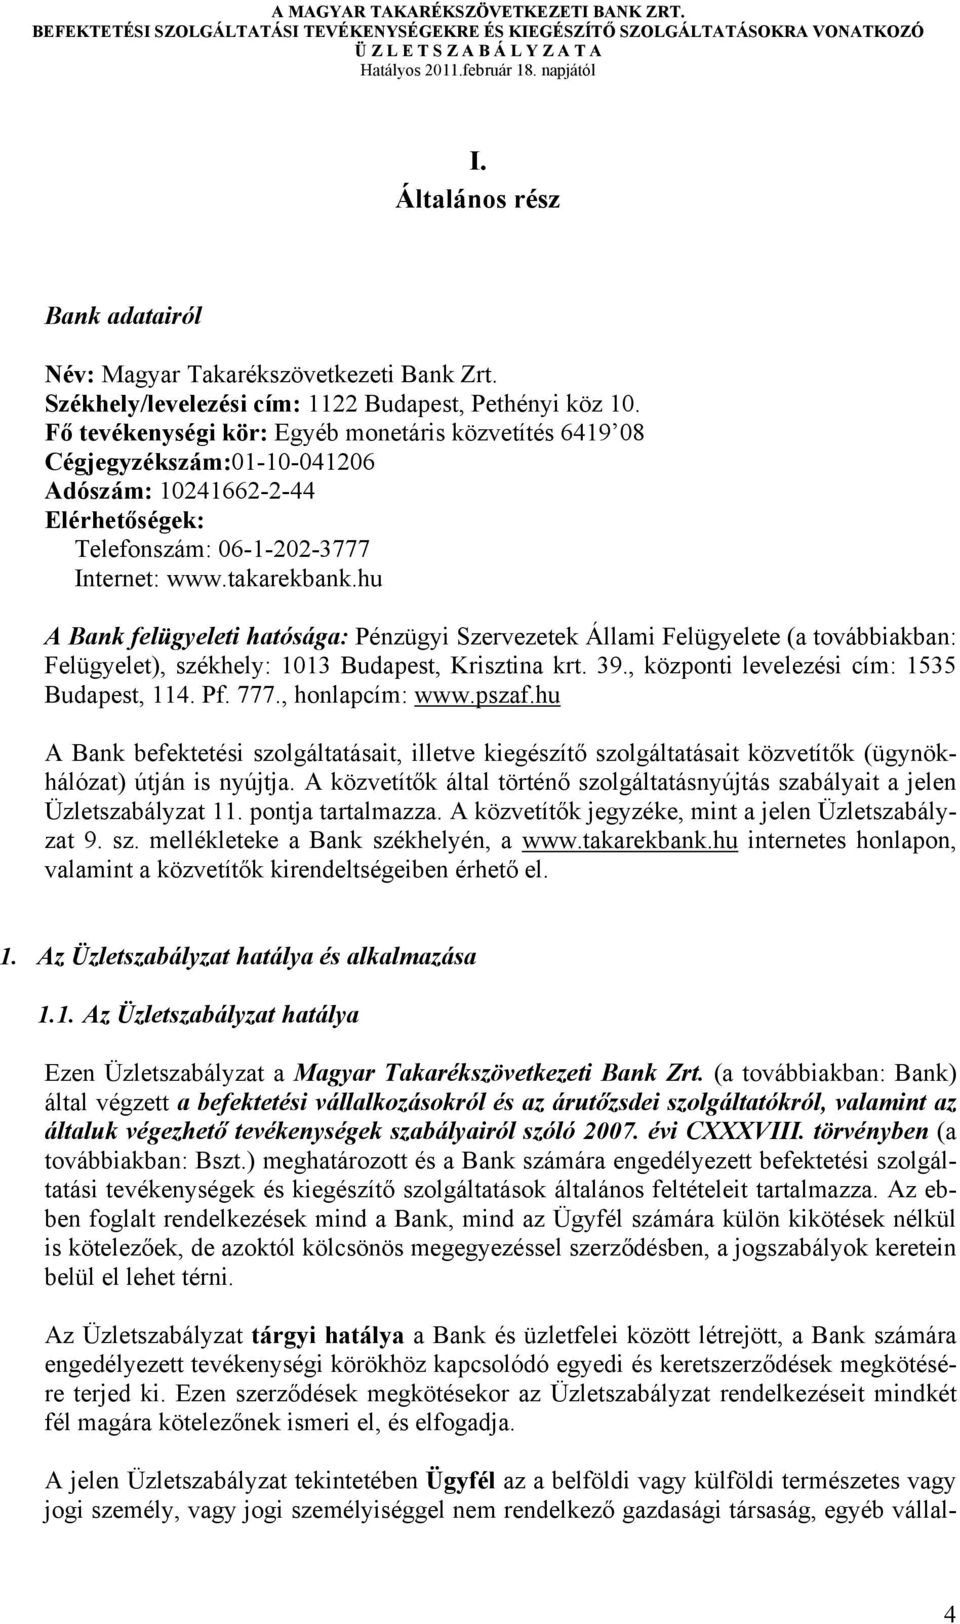 hu A Bank felügyeleti hatósága: Pénzügyi Szervezetek Állami Felügyelete (a továbbiakban: Felügyelet), székhely: 1013 Budapest, Krisztina krt. 39., központi levelezési cím: 1535 Budapest, 114. Pf. 777.